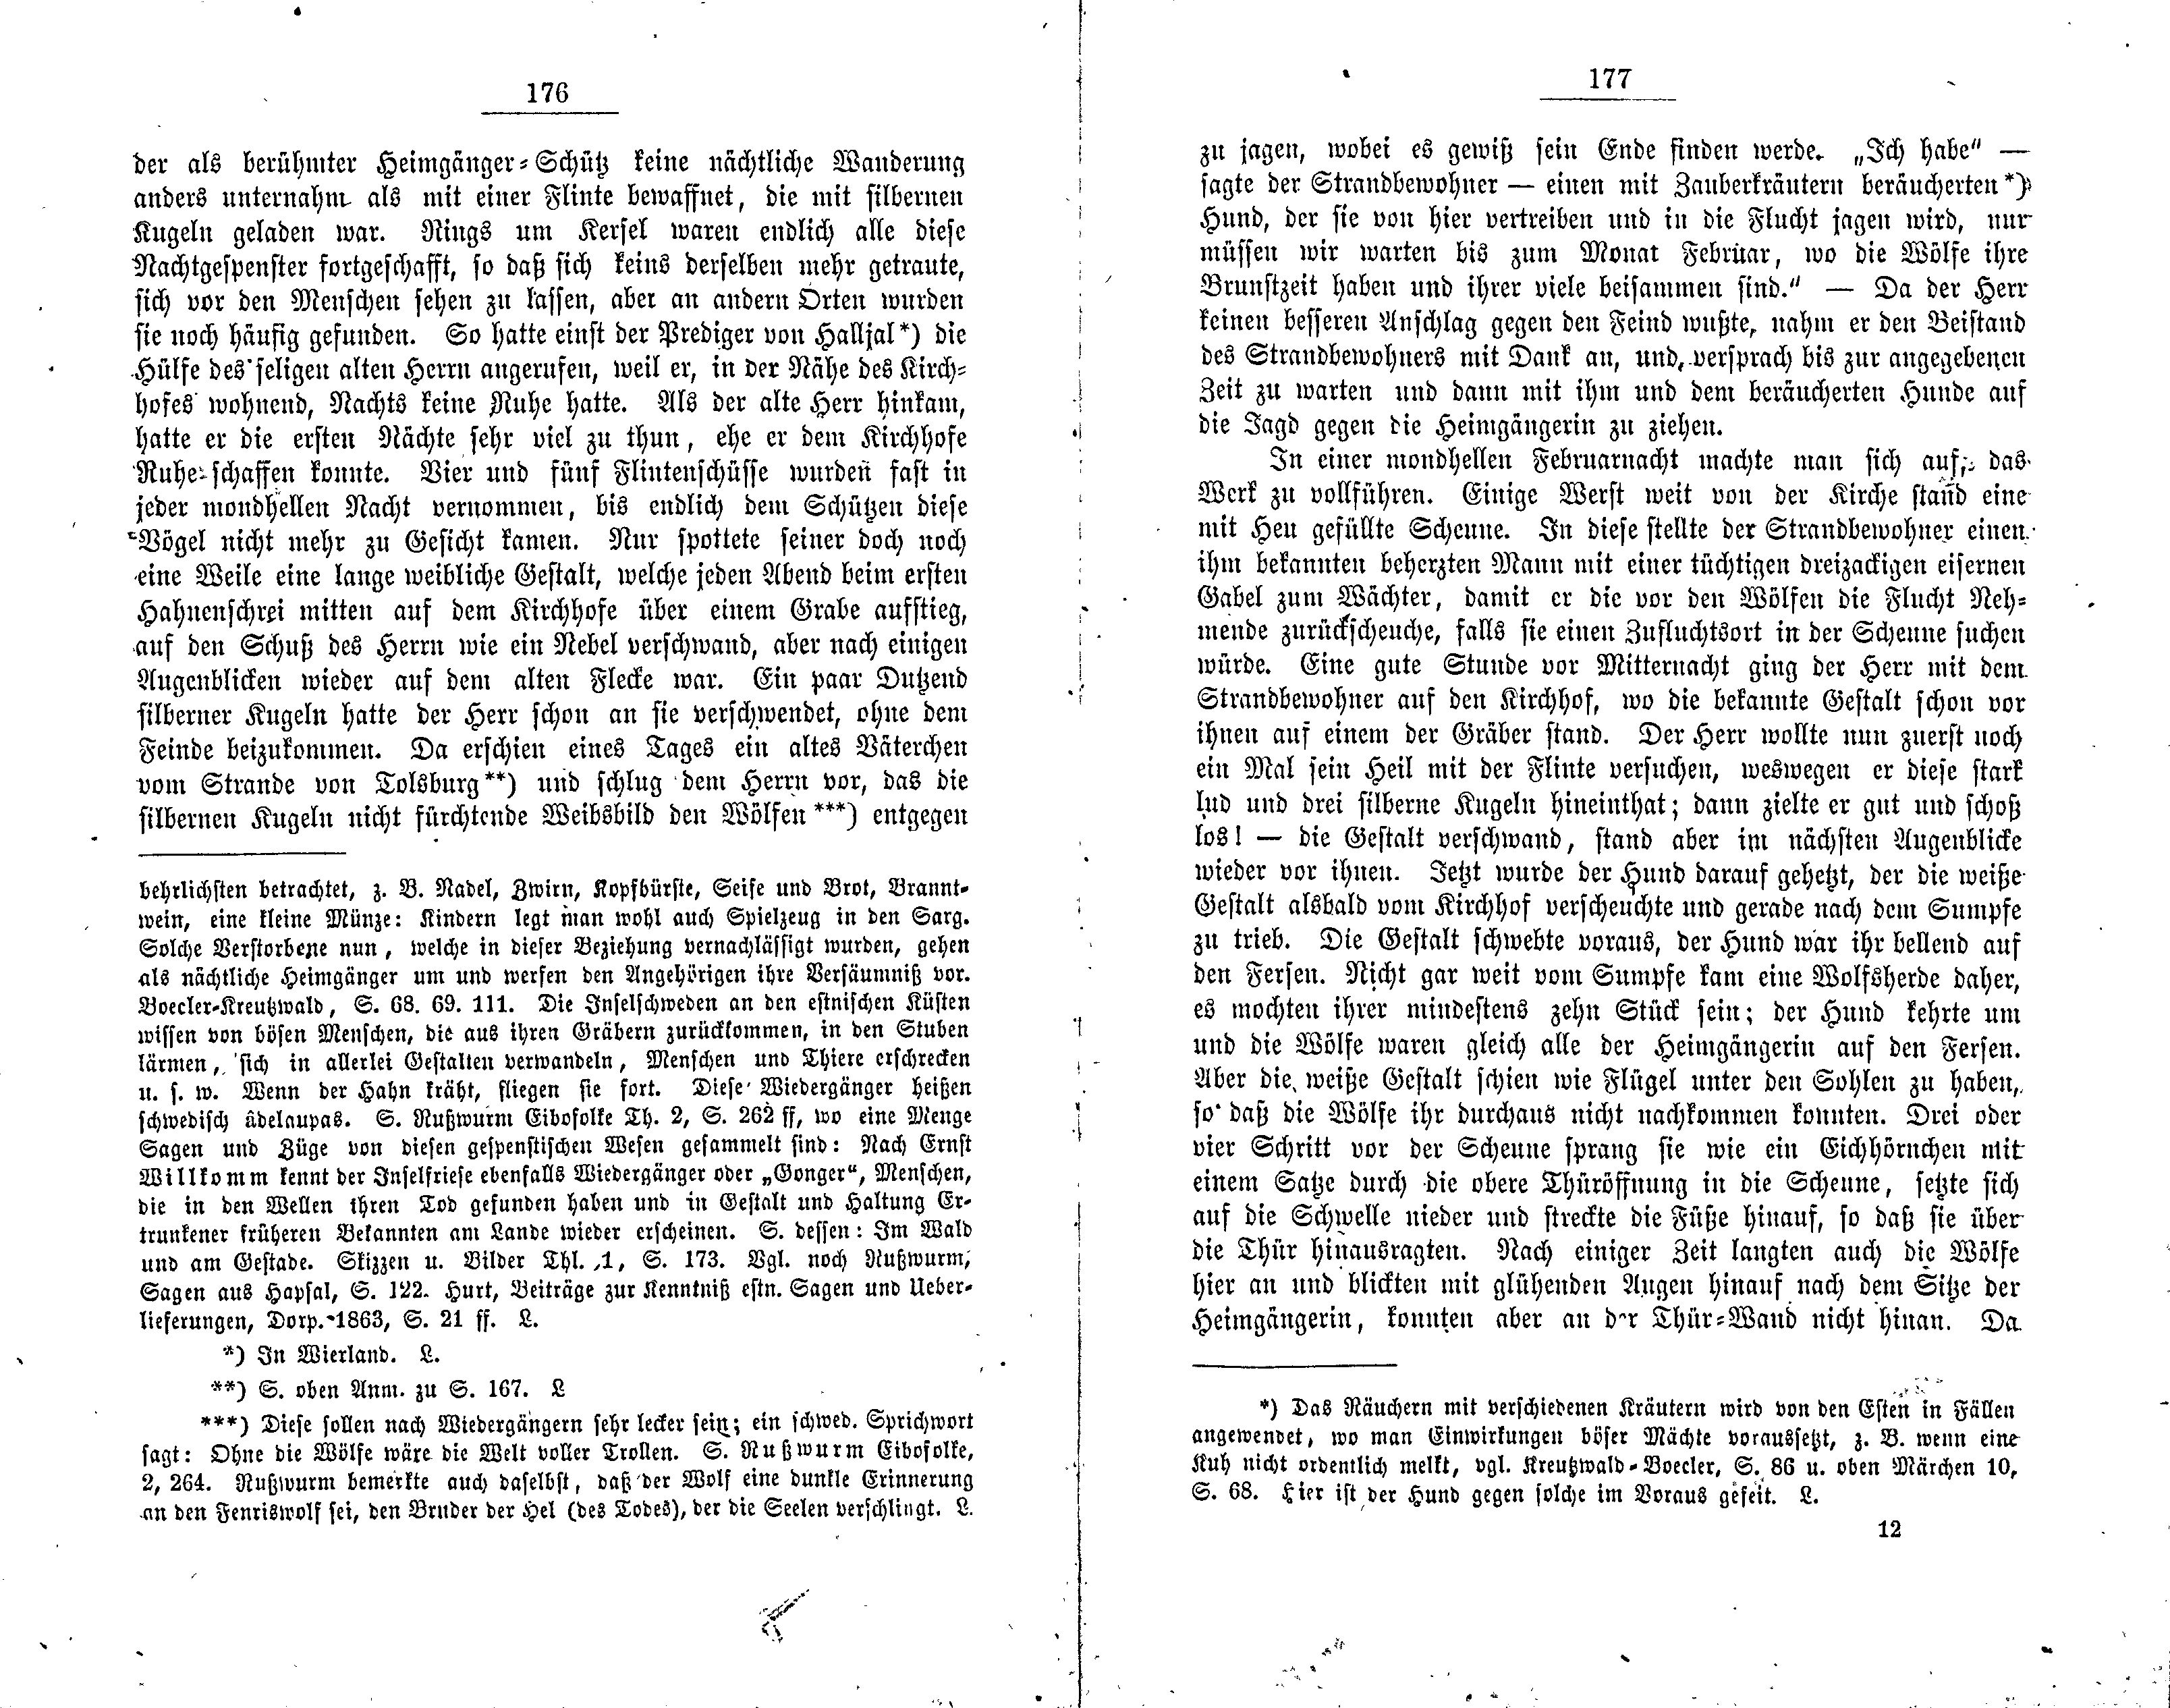 Estnische Märchen [2] (1881) | 92. (176-177) Haupttext